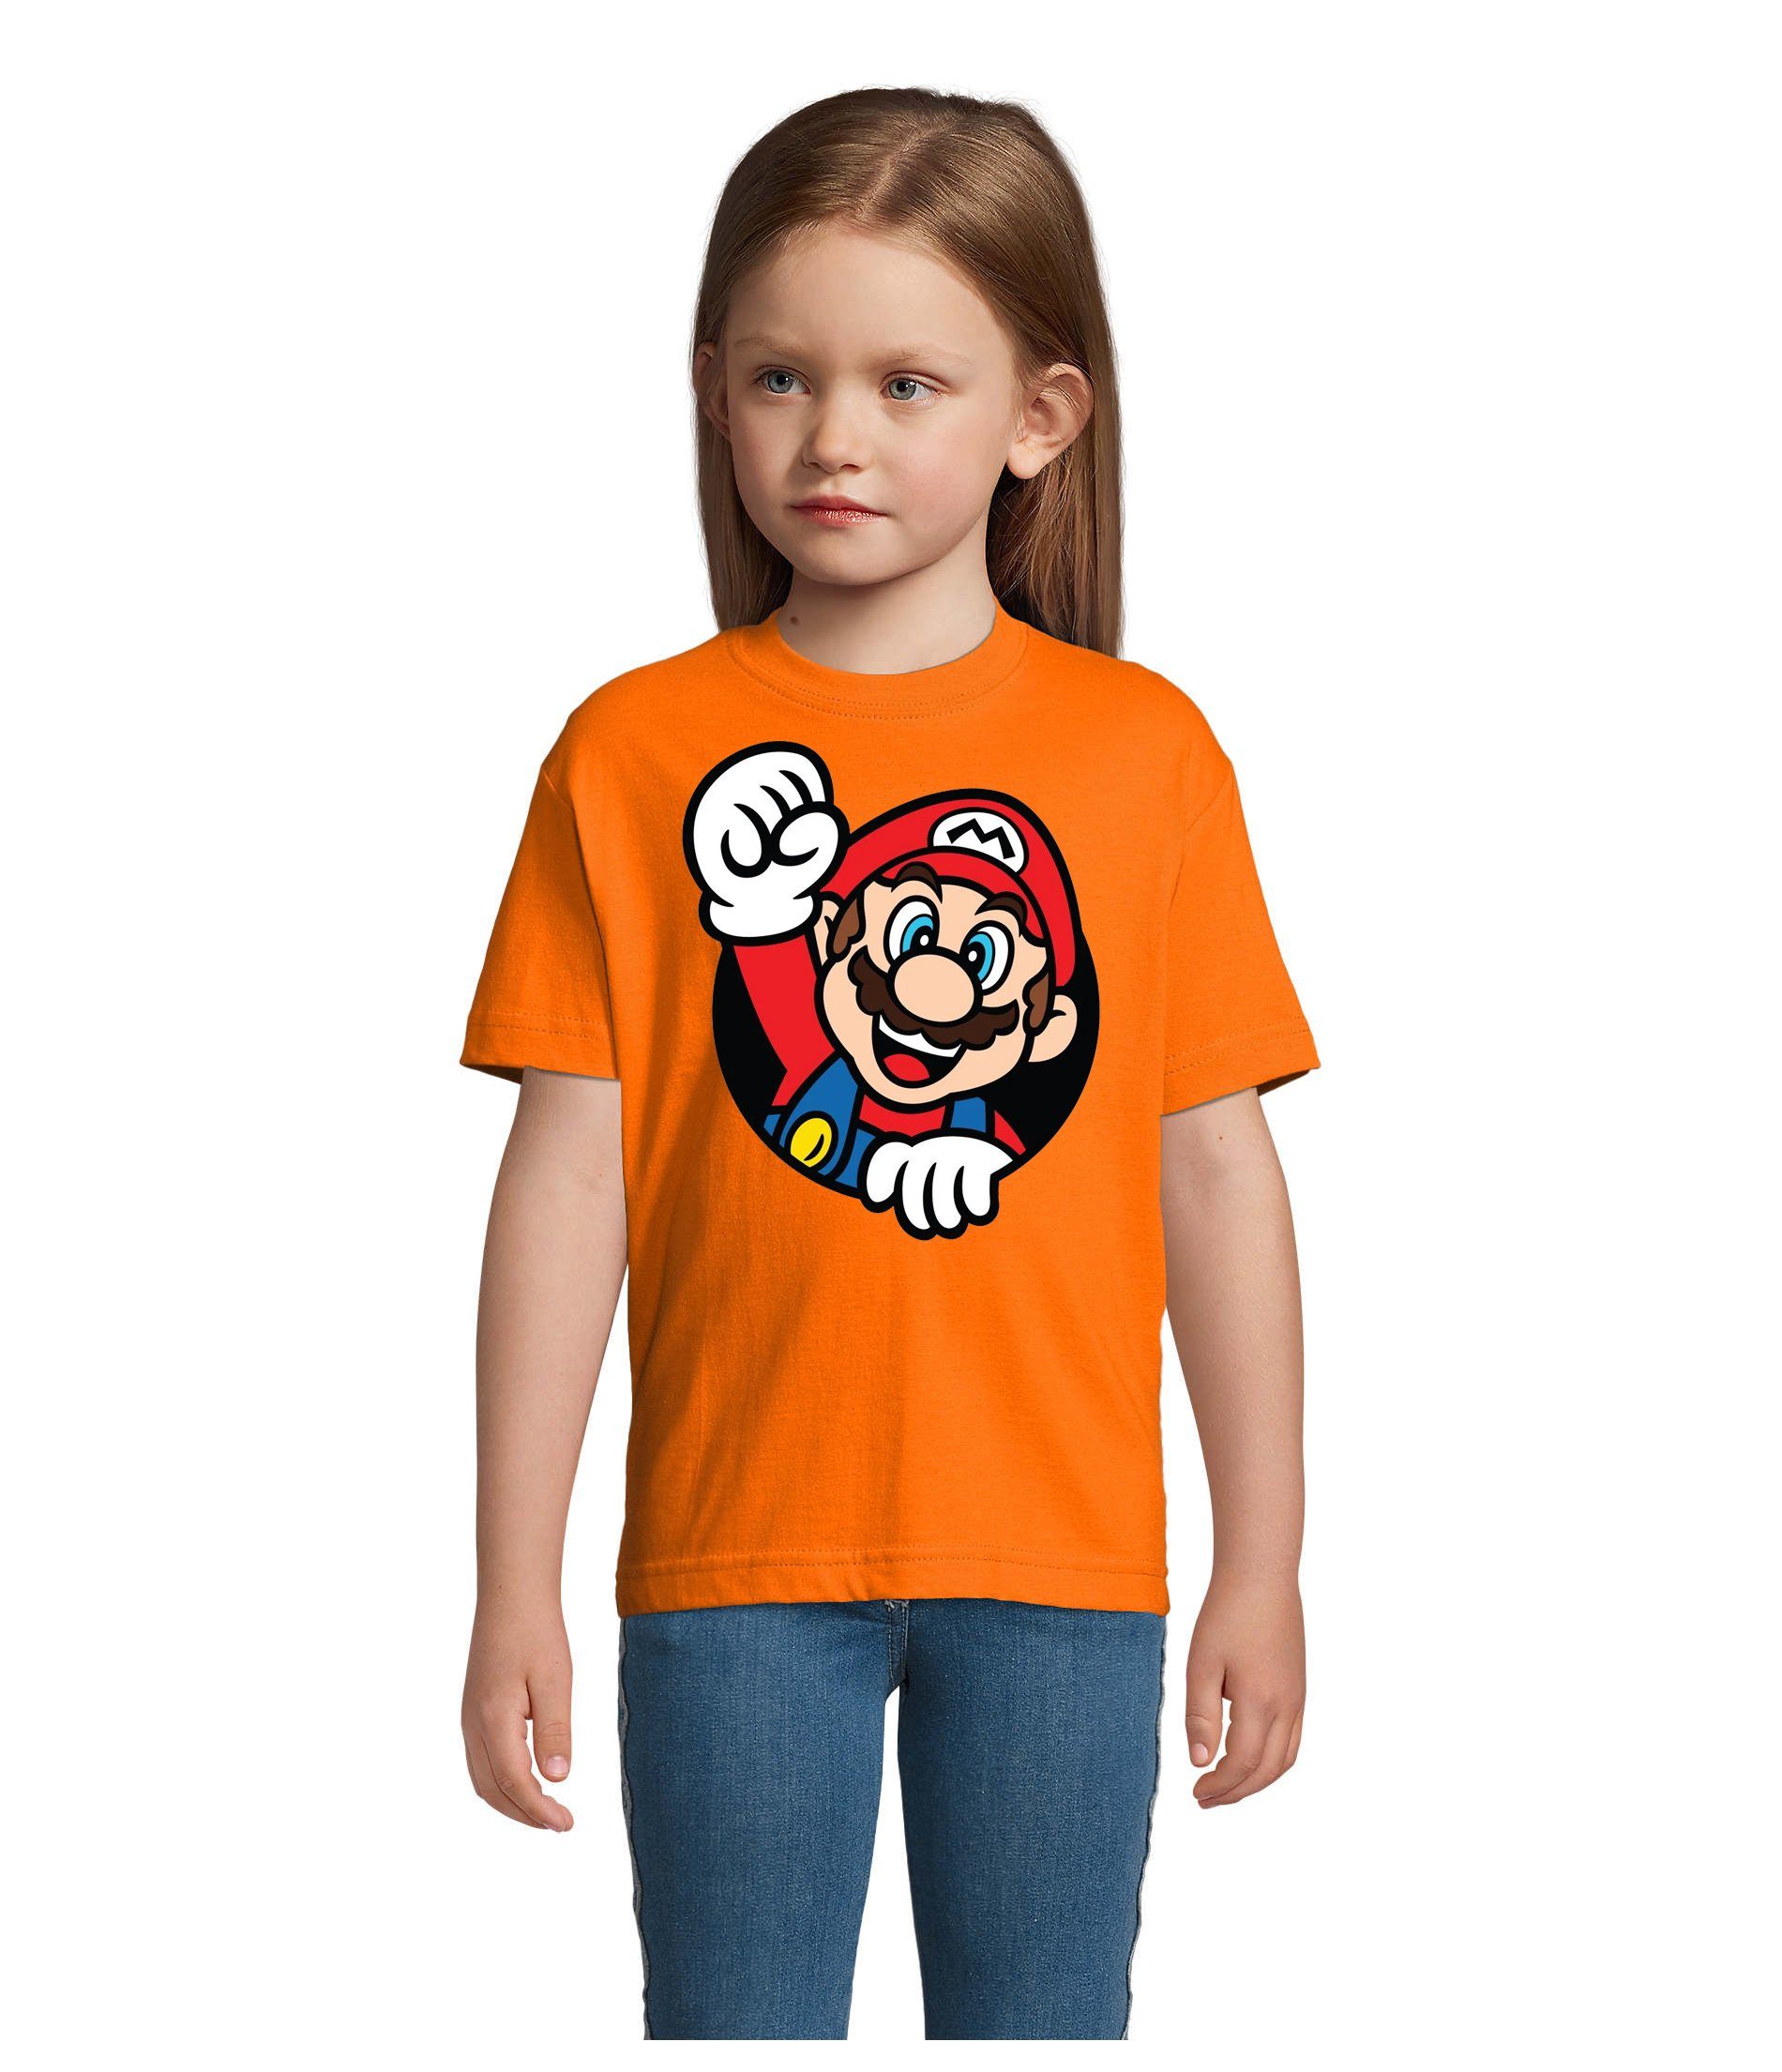 Blondie & Brownie T-Shirt Kinder Super Mario Faust Nerd Konsole Gaming Spiel Nintendo Konsole Orange | T-Shirts